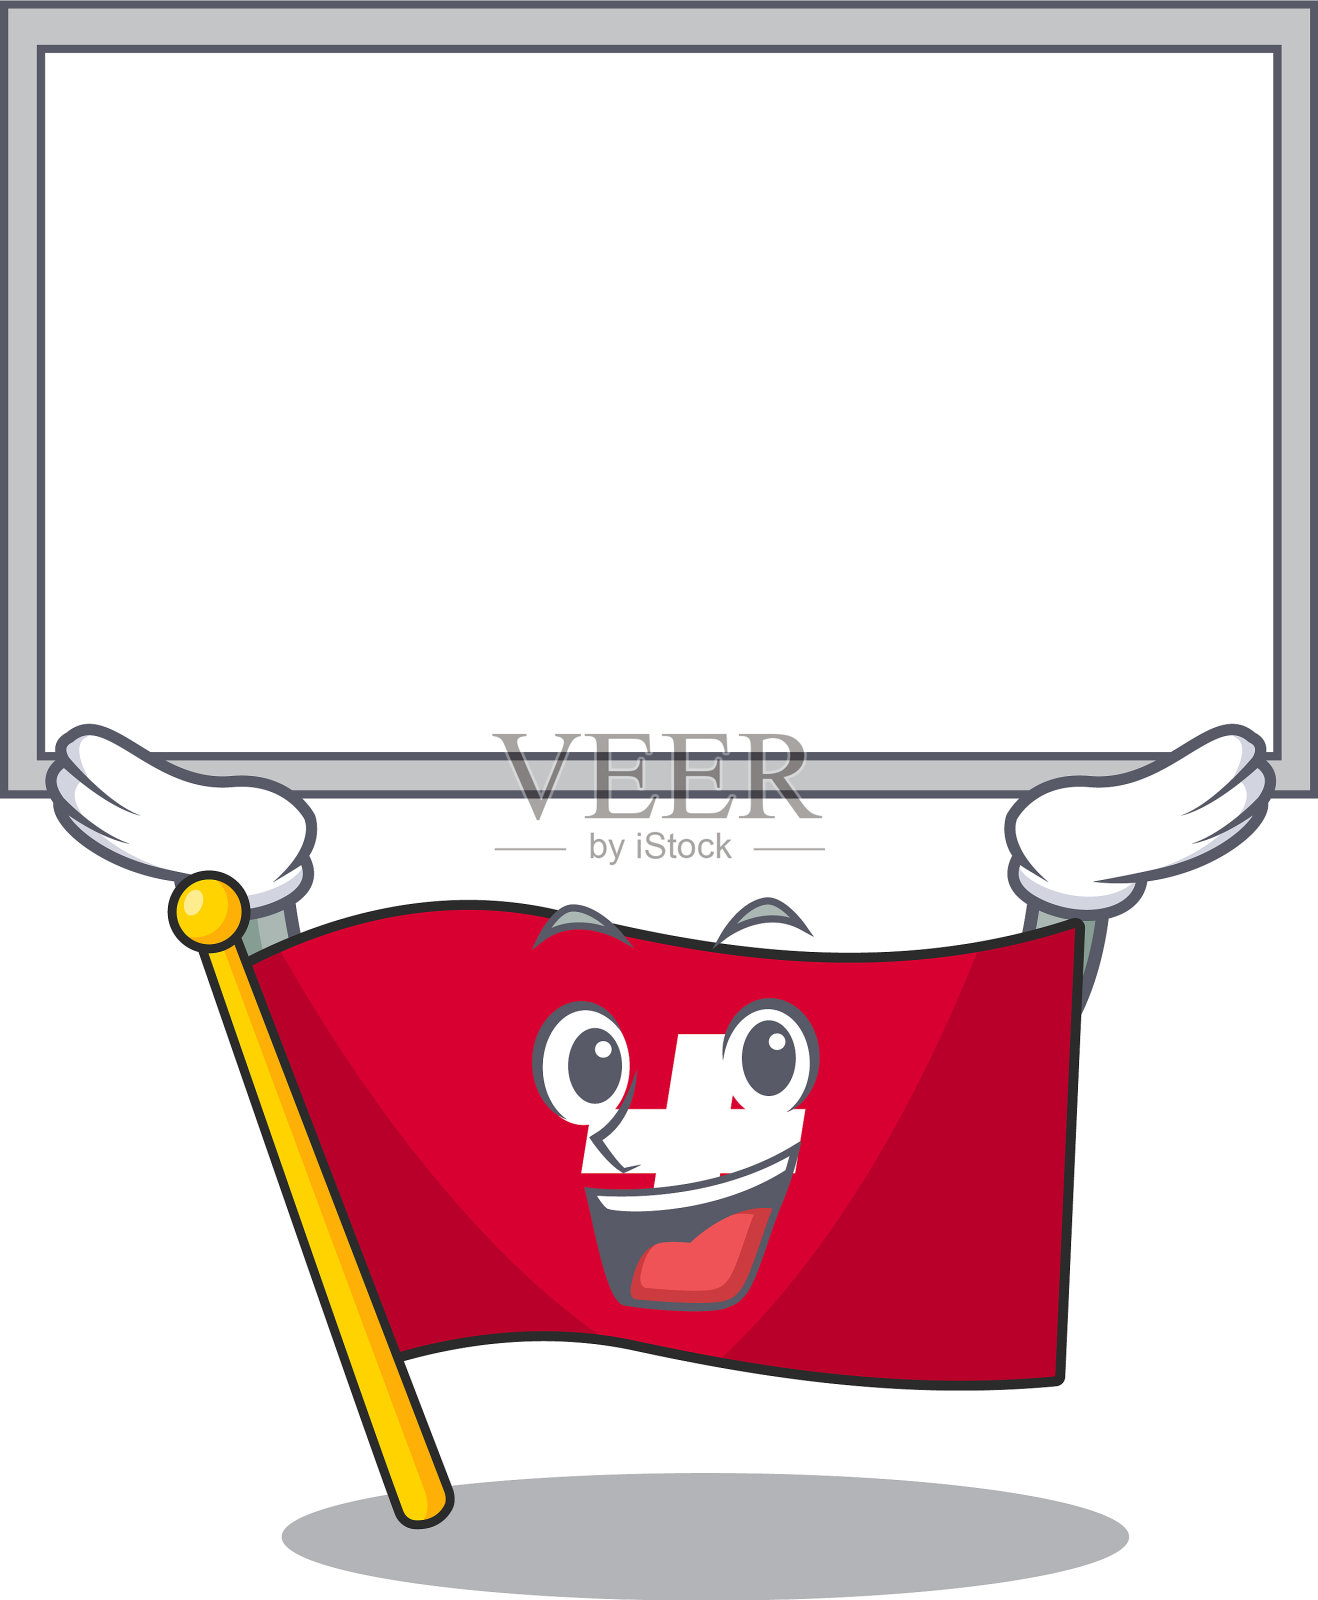 上板旗帜瑞士与吉祥物形状插画图片素材